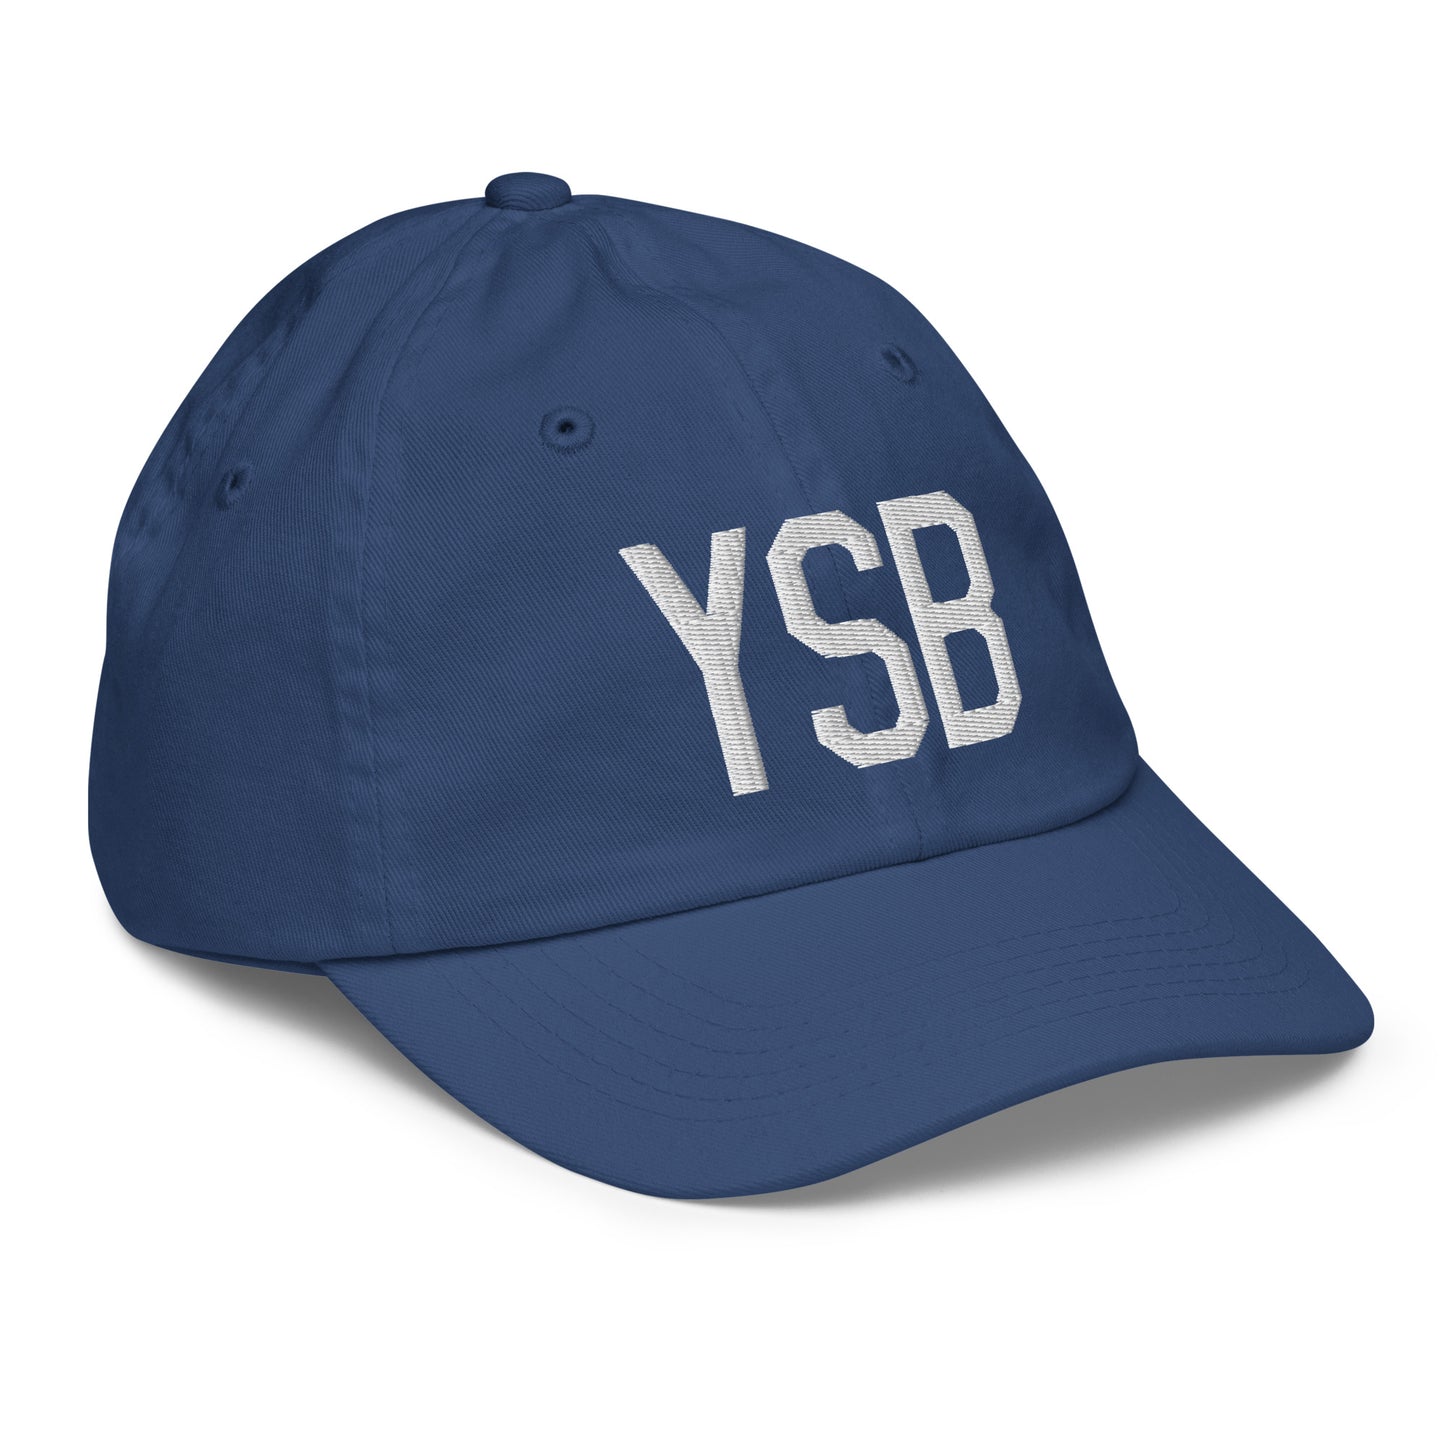 Airport Code Kid's Baseball Cap - White • YSB Sudbury • YHM Designs - Image 21